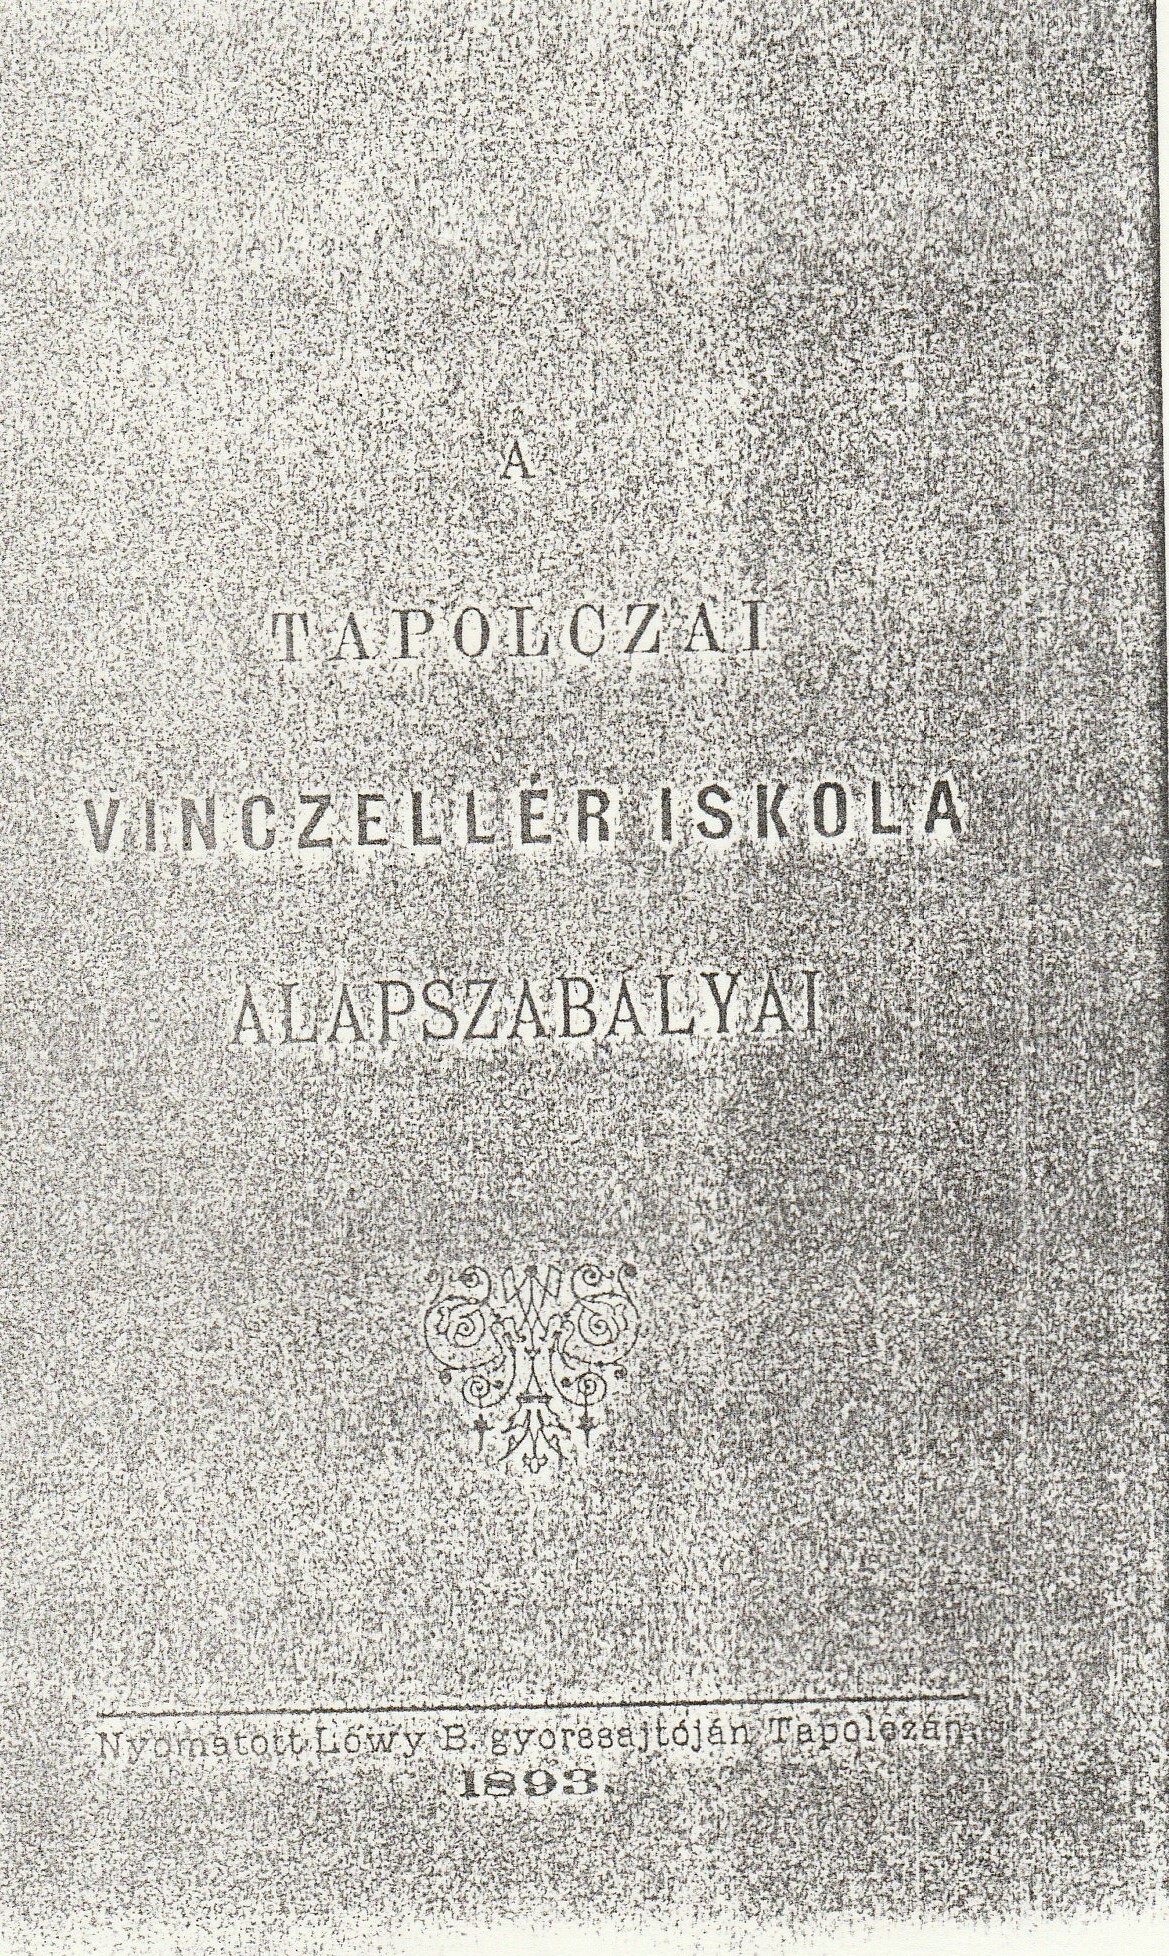 A tapolcai vincellériskola alapszabályának másolata (Tapolcai Városi Múzeum CC BY-NC-SA)